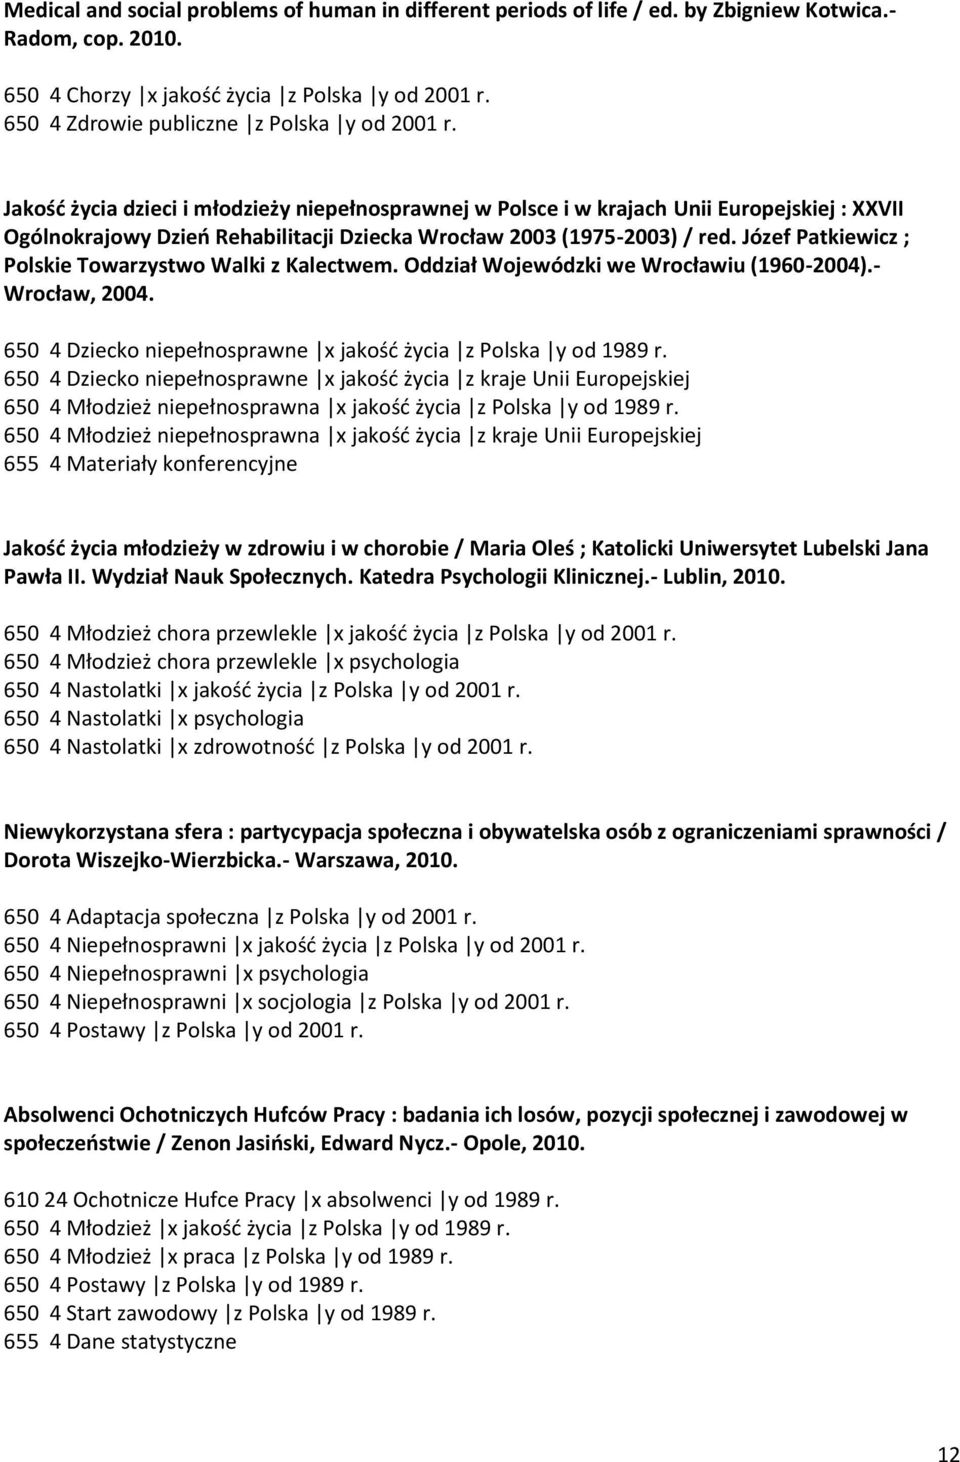 Jakośd życia dzieci i młodzieży niepełnosprawnej w Polsce i w krajach Unii Europejskiej : XXVII Ogólnokrajowy Dzieo Rehabilitacji Dziecka Wrocław 2003 (1975-2003) / red.